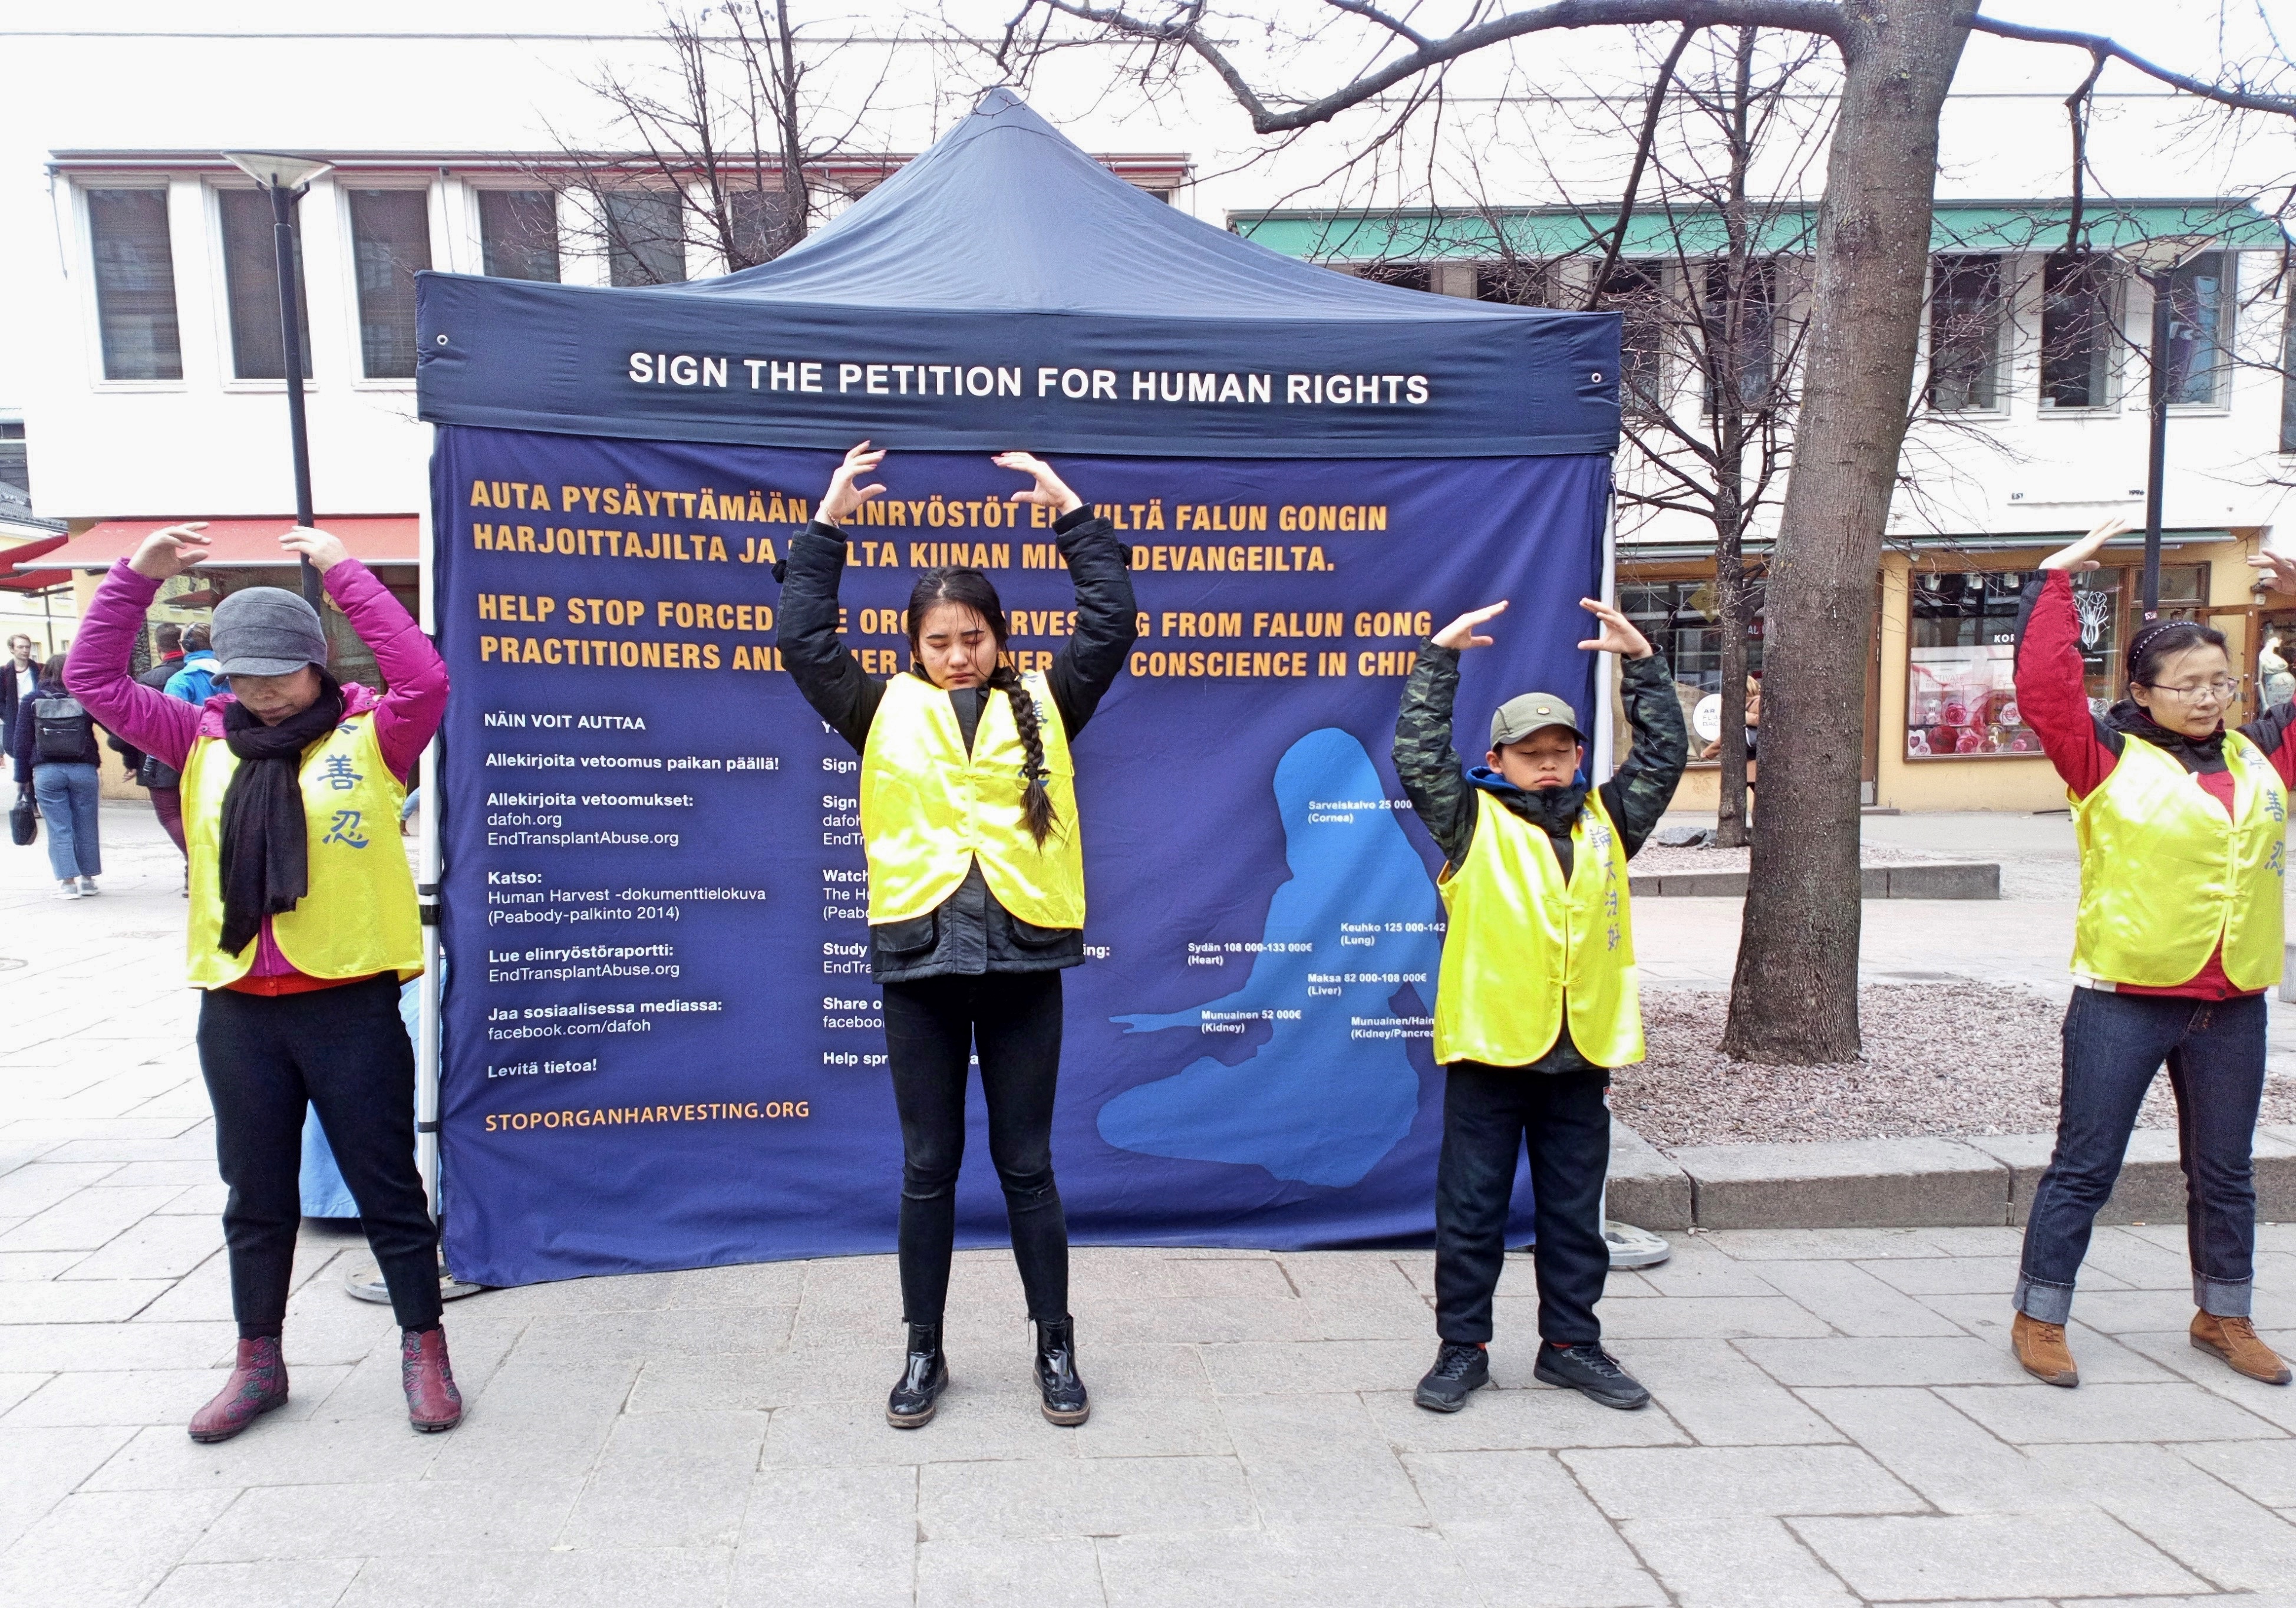 Image for article Finlande : Les habitants d'Helsinki soutiennent les efforts des pratiquants de Falun Gong pour mettre fin à la persécution